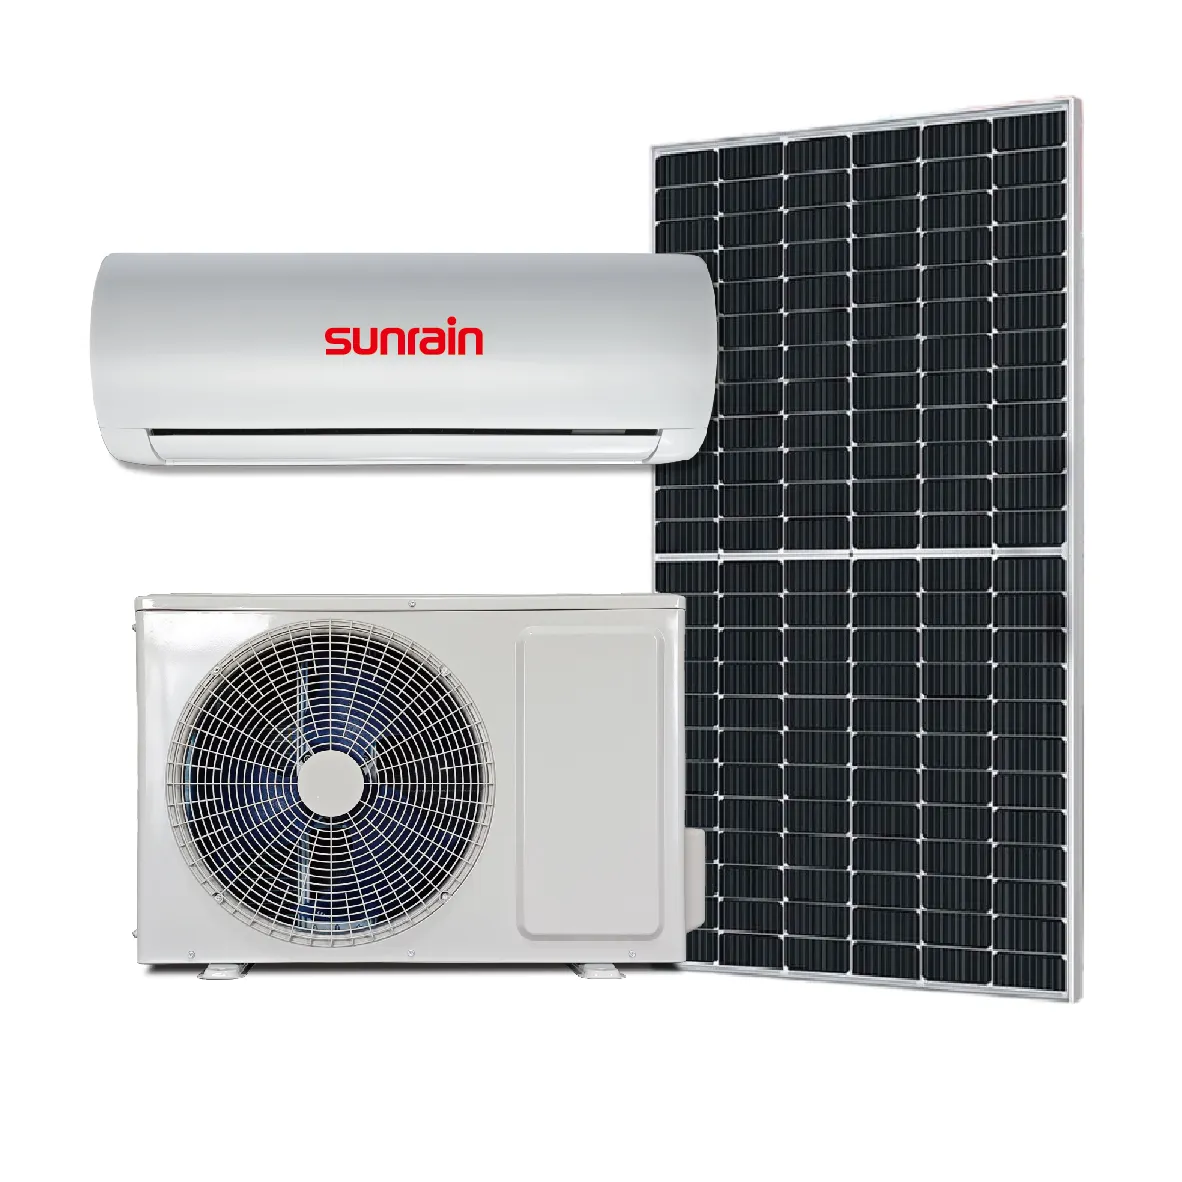 مكيف هواء بالطاقة الشمسية يعمل بتيار متردد Sunrain 9000Btu على الشبكة محول نظام الطاقة الشمسية للمنزل الجدار لوحة هجينة منفصلة